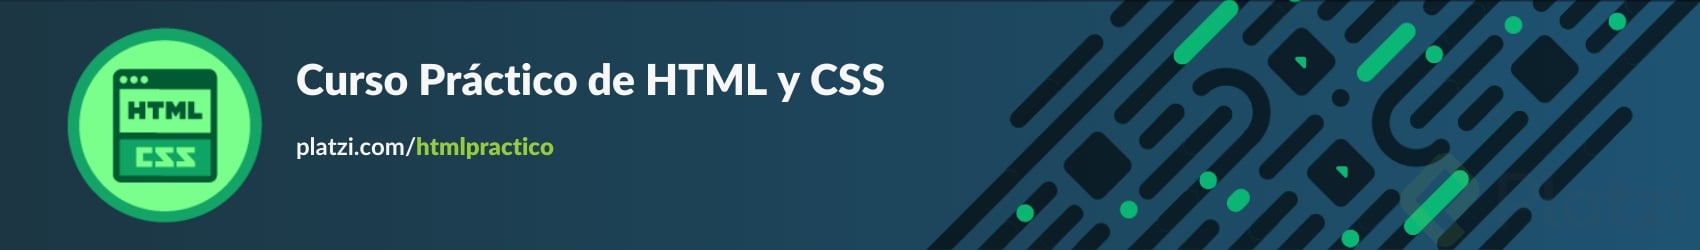 Curso Práctico de HTML y CSS